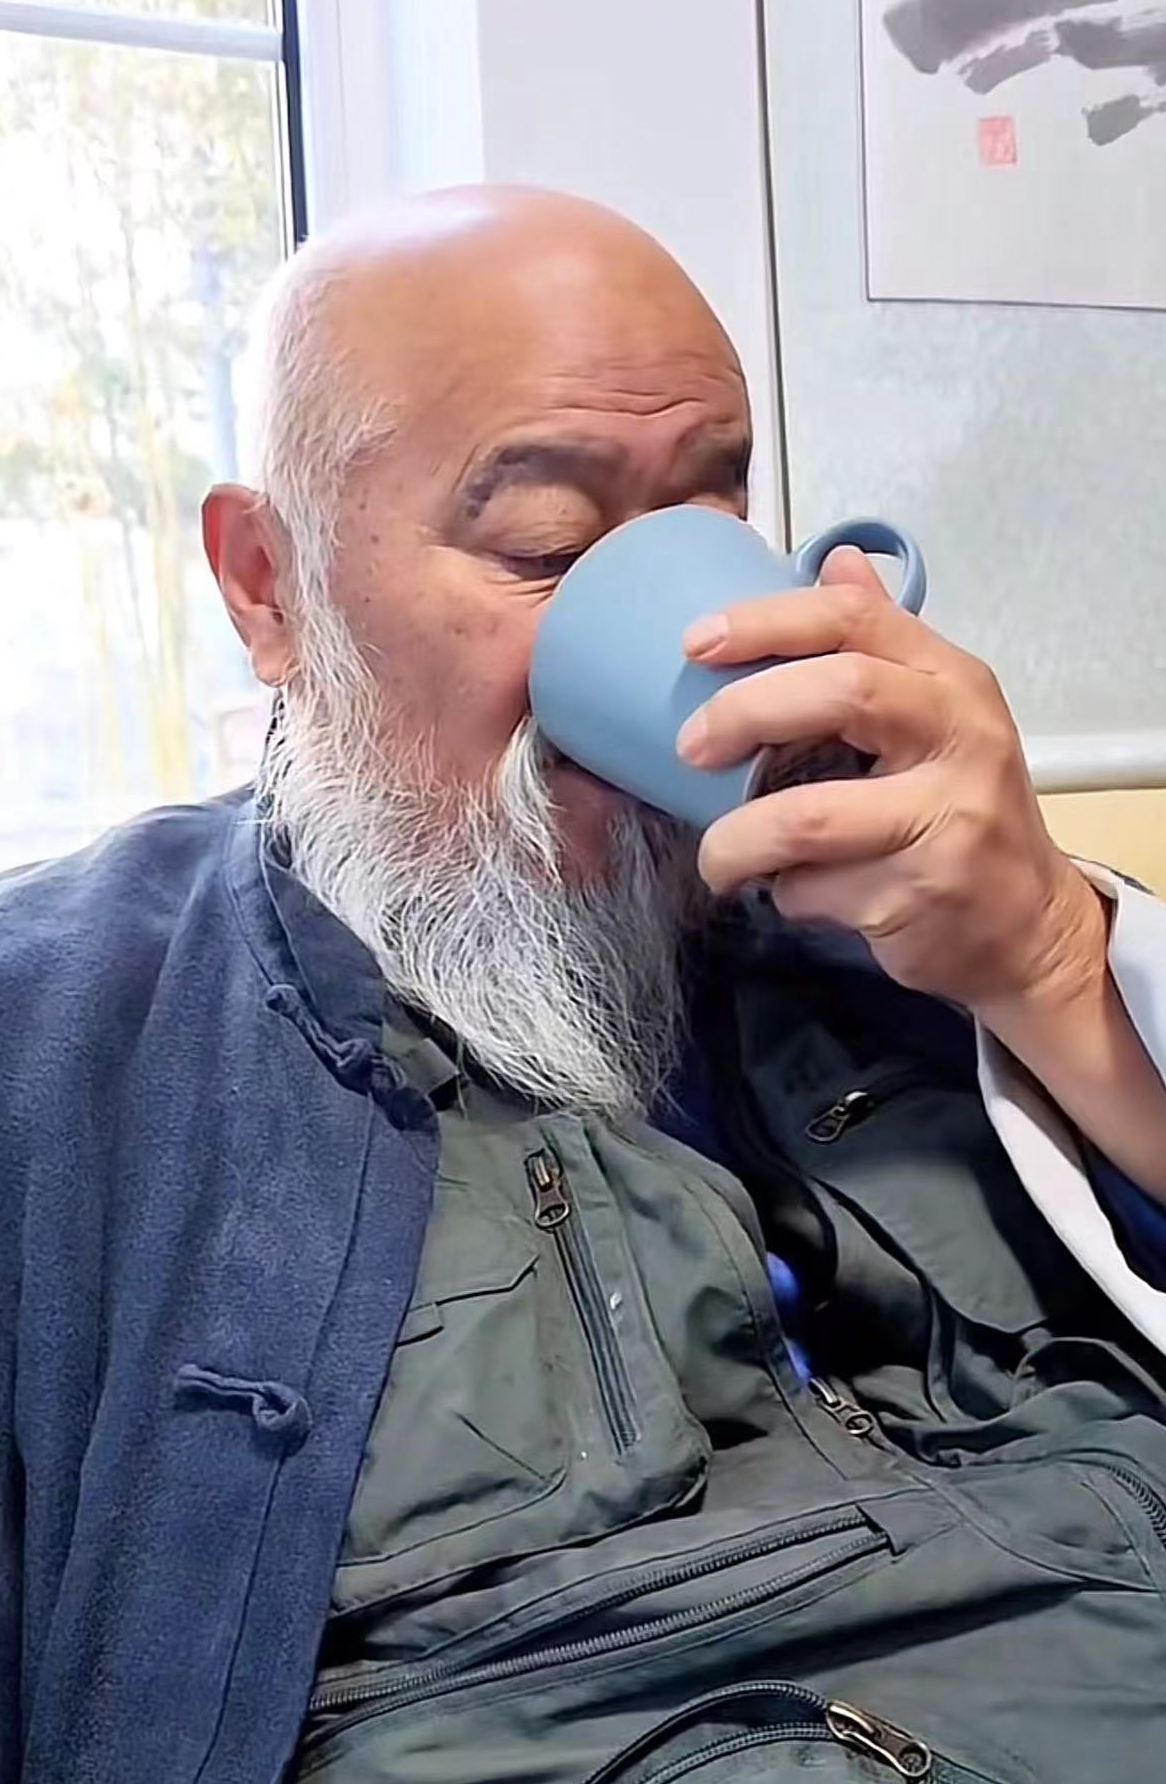 67岁李琦退休后在北京生活,衣着邋遢皱纹横生,光头模样似寿星公